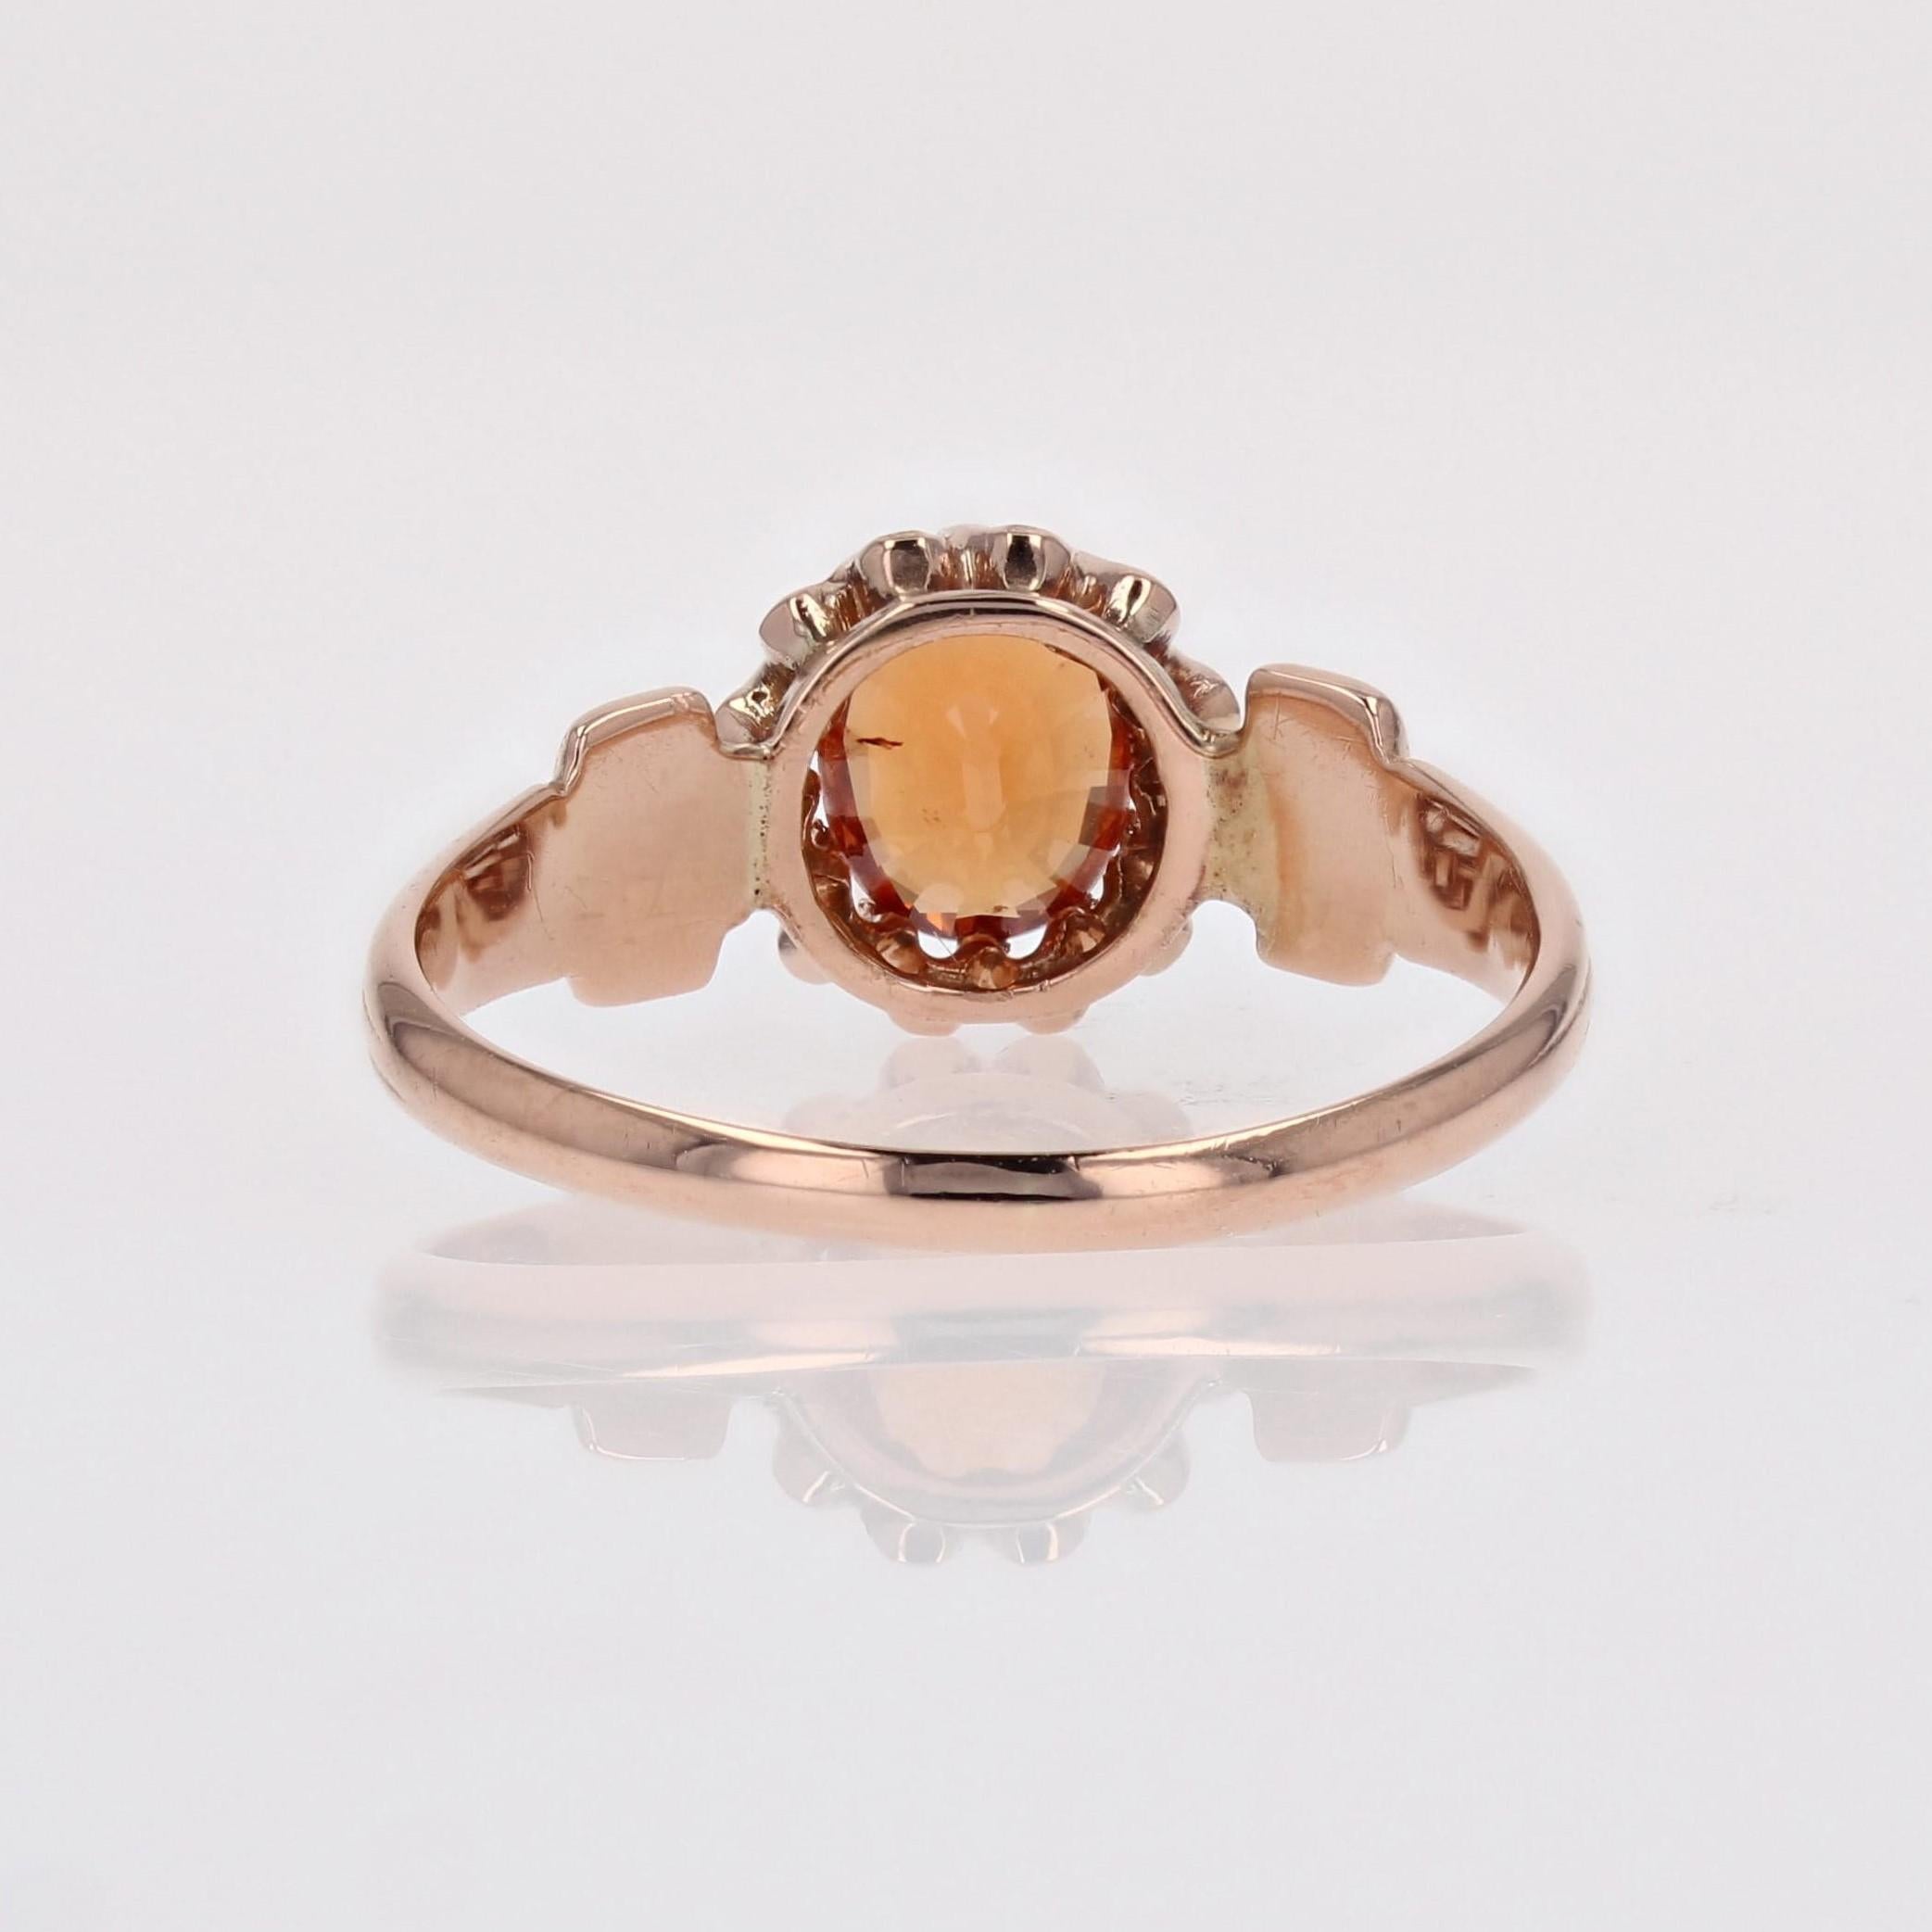 19th Century Spessartite Garnet 18 Karat Rose Gold Ring 9